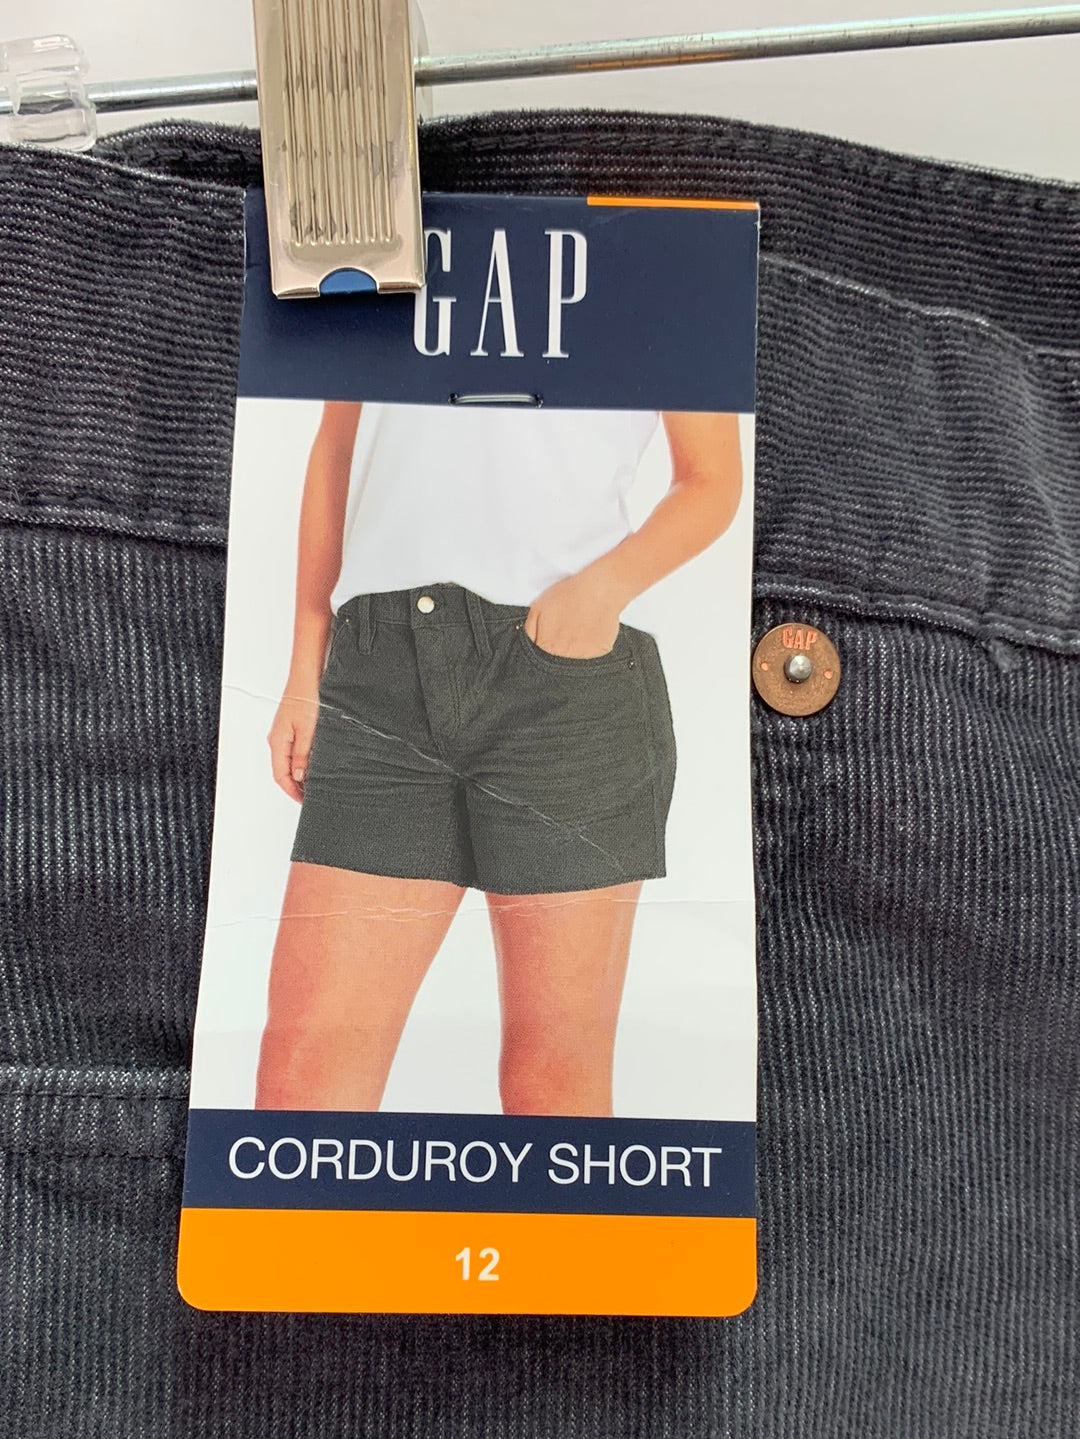 NWT - GAP charcoal grey Frayed Hem Mid Rise Corduroy Shorts - Size 12